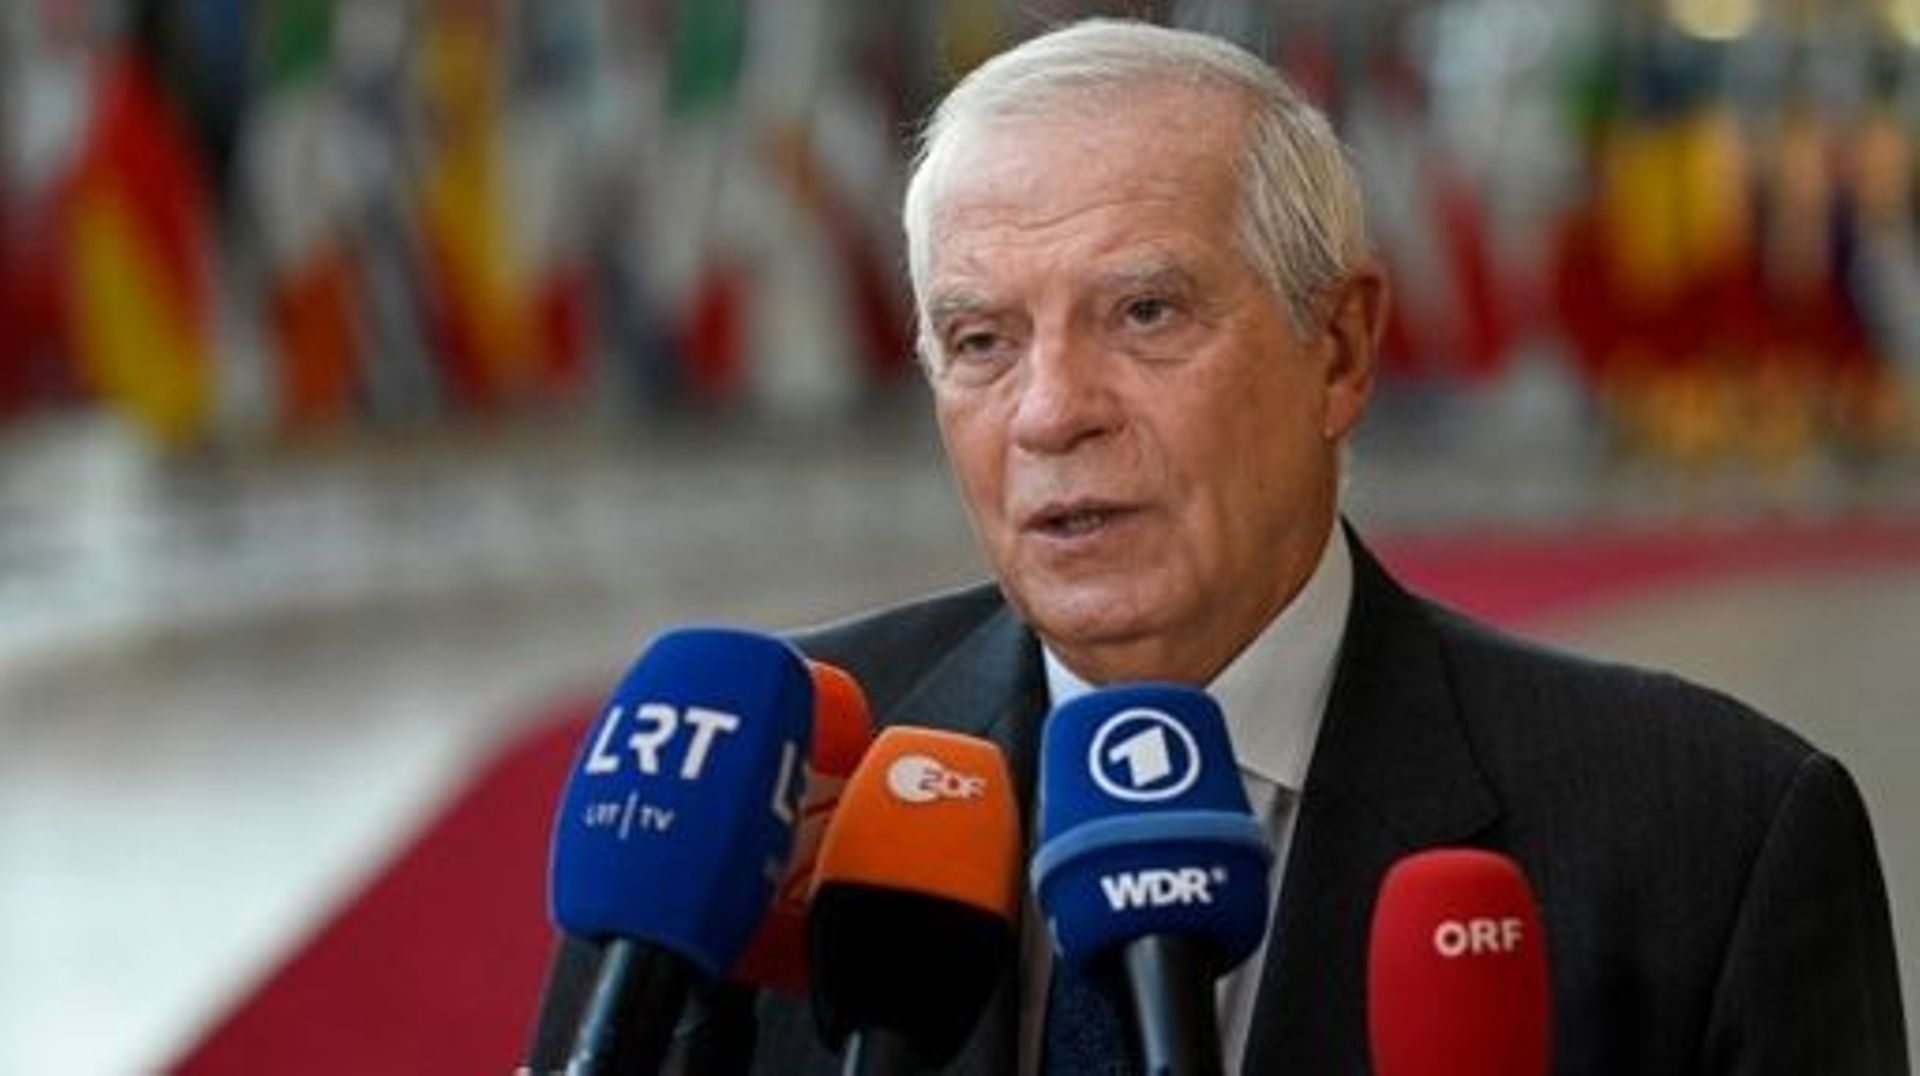 Borrell juge "très préoccupantes" les accusations de corruption au Parlement européen